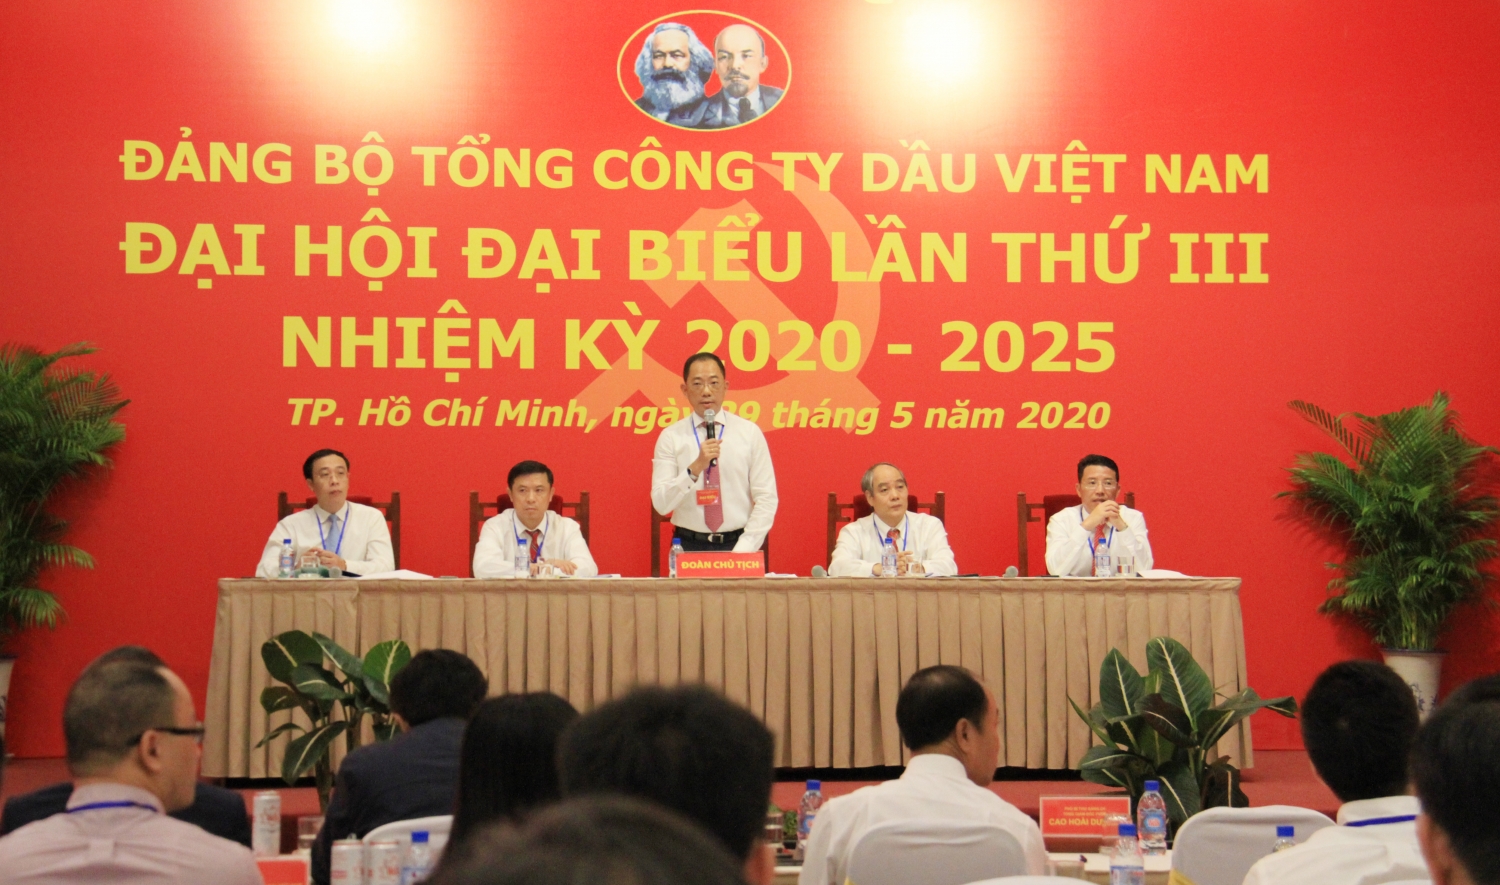 dang bo pvoil to chuc thanh cong dai hoi dai bieu lan thu iii nhiem ky 2020 2025